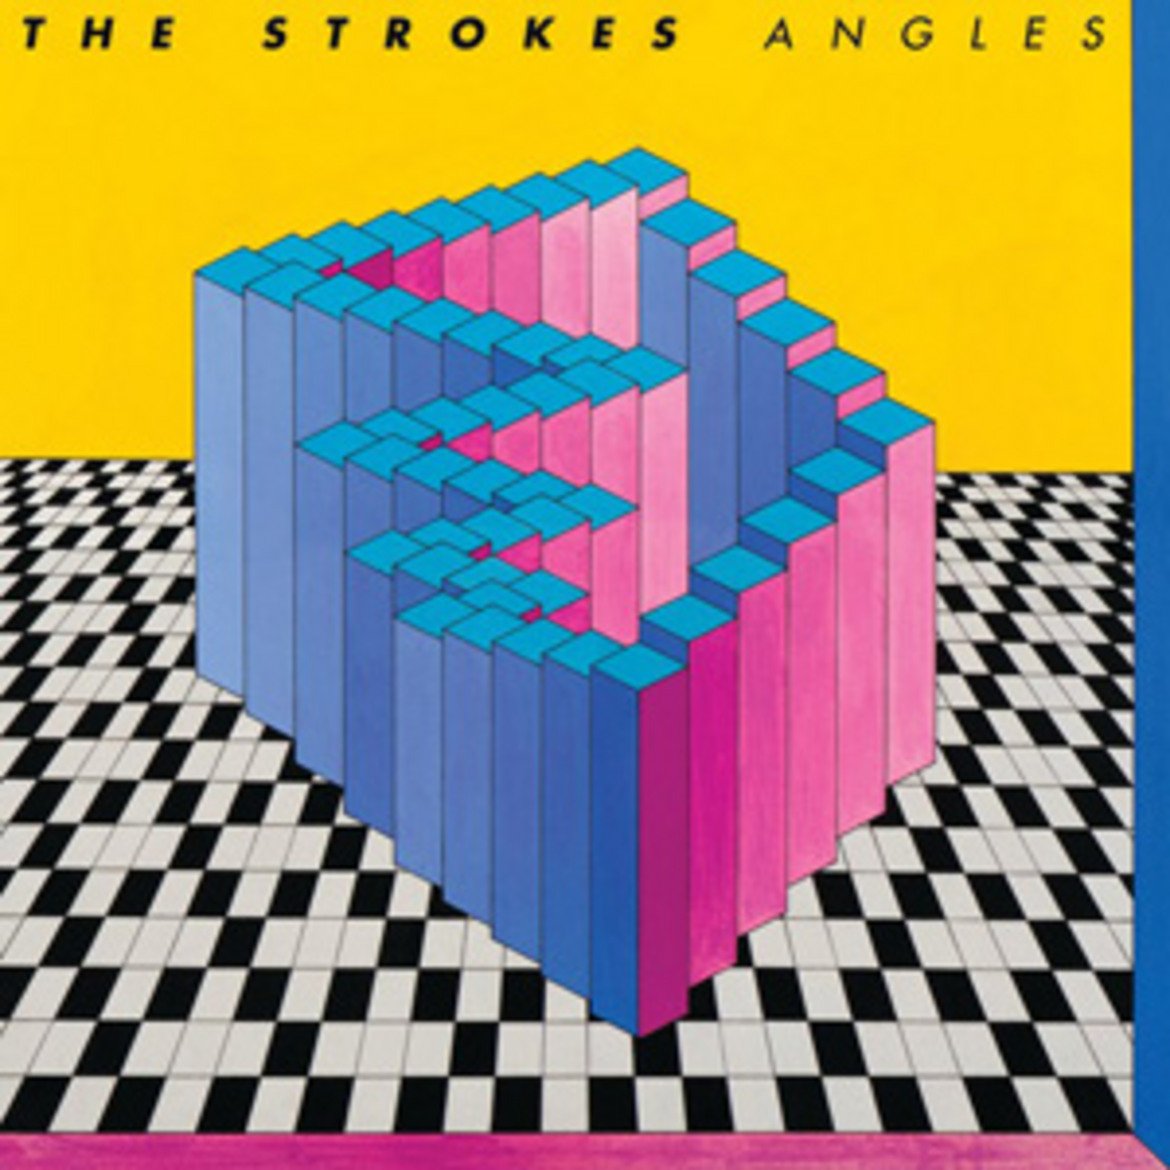  The Strokes - Angels 

The Strokes започват кариерата си обещаващо – приятен външен вид, бохемско излъчване и невероятно сполучлив първи албум – "Is This It?". Песните в него са страхотни и всичко изглежда твърде добре, за да е истина. Оказва се, че да пуснеш толкова як първи албум може да означава, че никога няма да повториш неговия успех.

Бандата издава следващите си албуми през 2003 и 2006 г. и им отнема цели пет години, преди да стигнат до "Angels". Не след дълго си проличава, че момчетата никак не са доволни от създаденото. Фронтменът Ник Валенси споделя, че е по-добре въобще да спре да прави музика, отколкото да направи нещо подобно втори път.